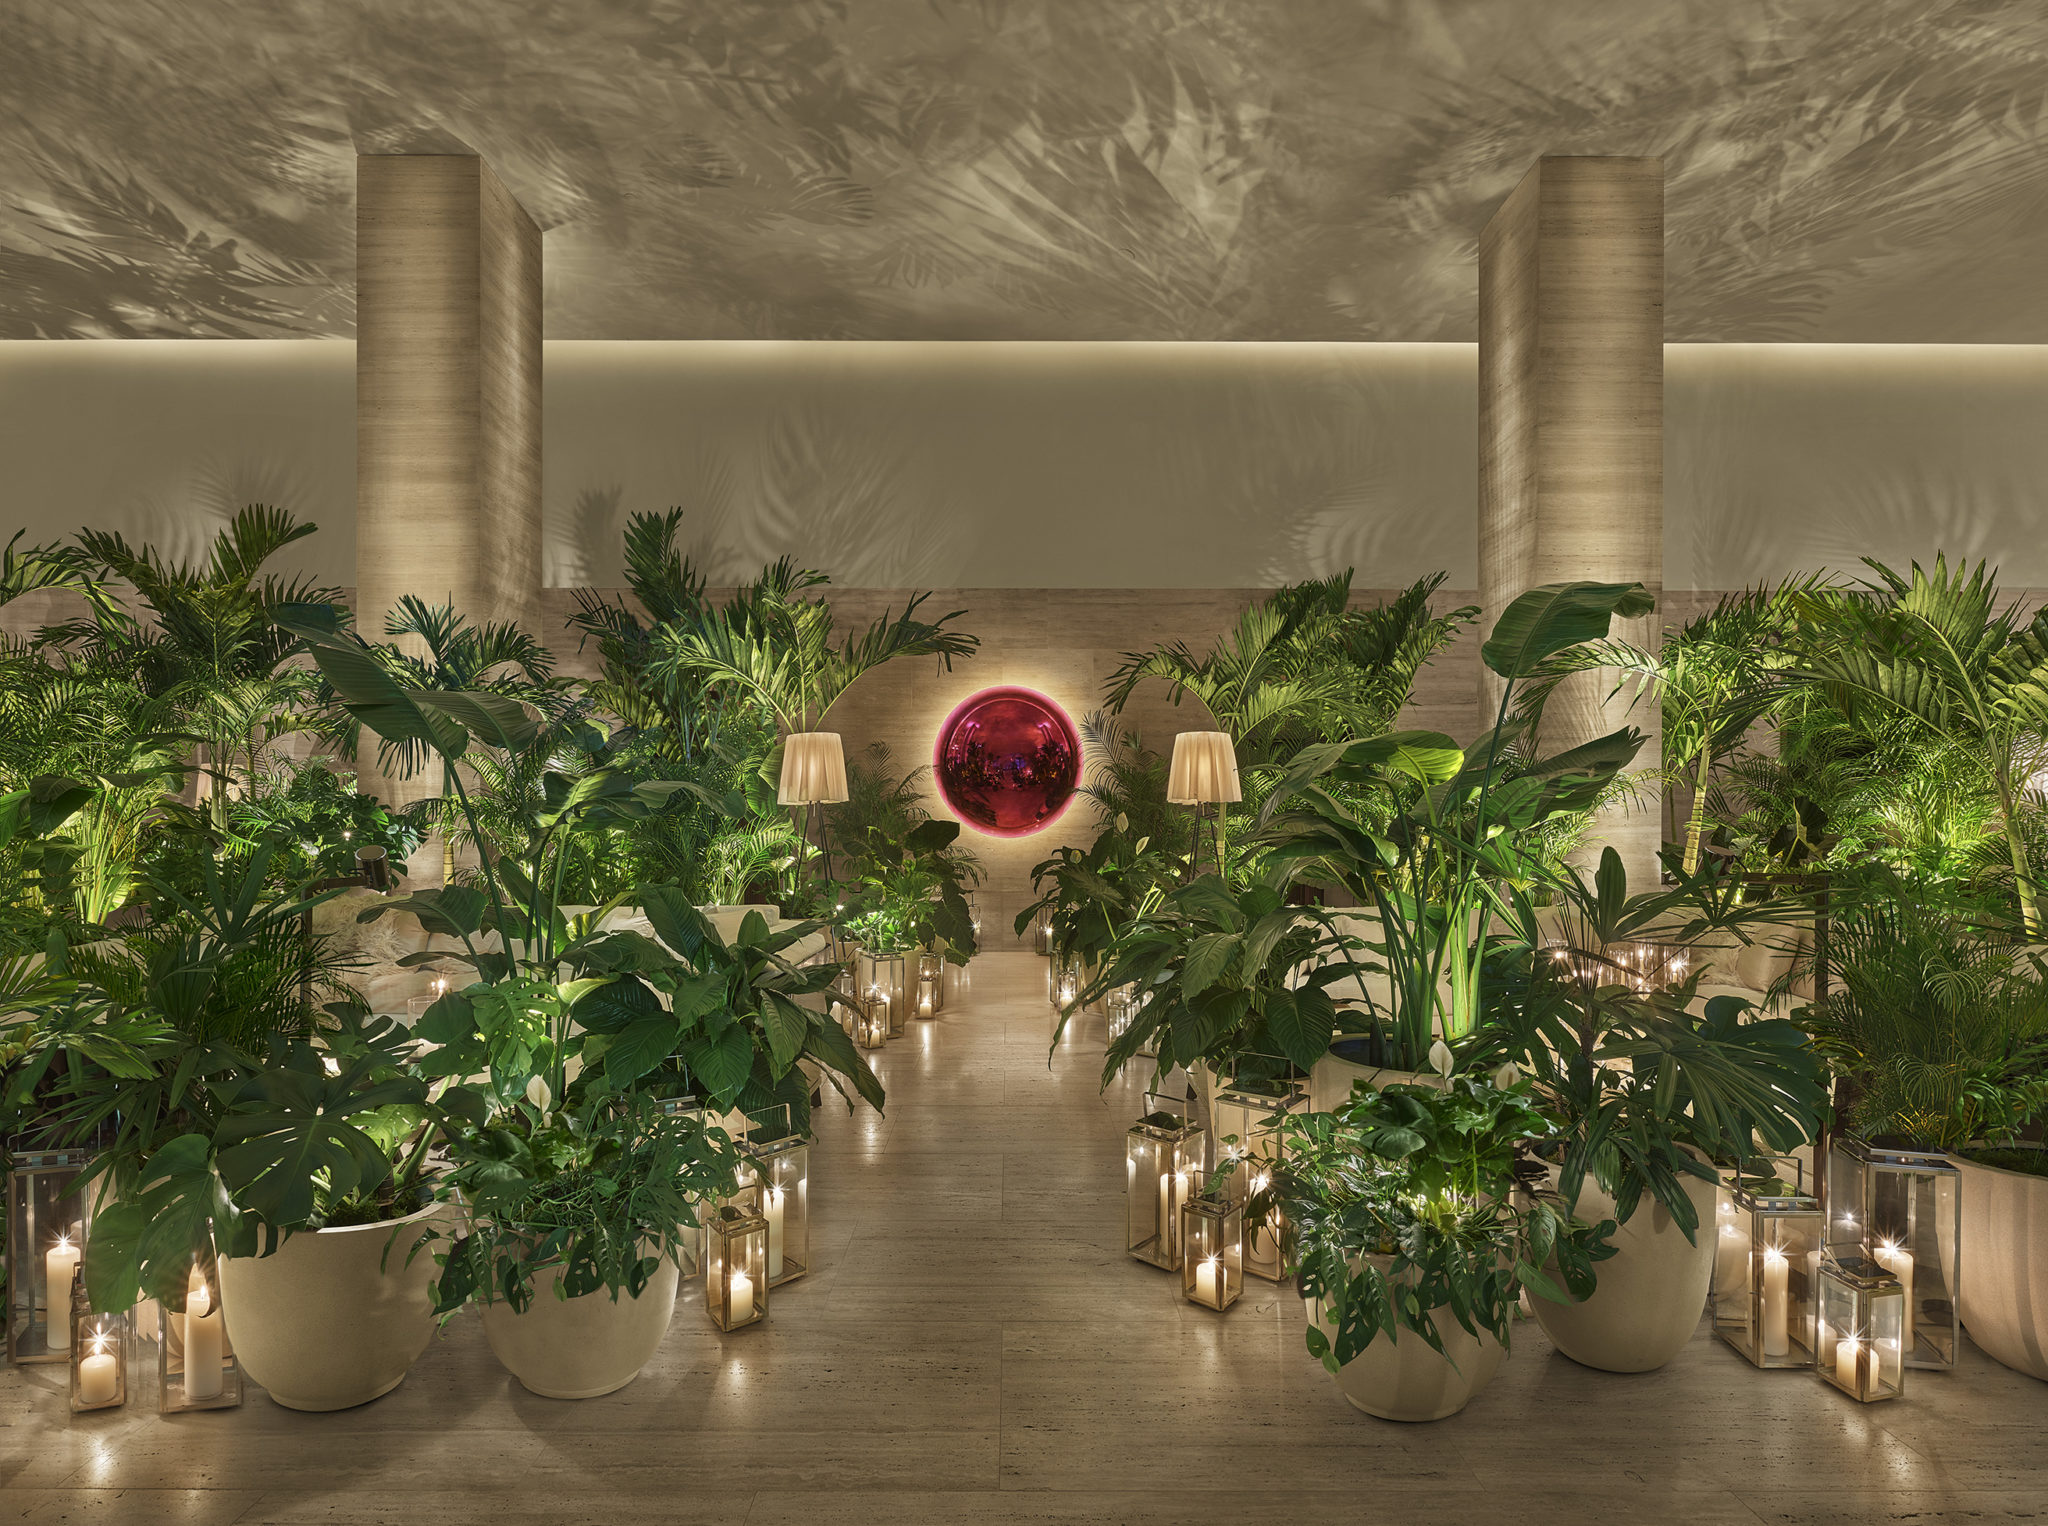 Entrada del lobby decorada con palmeras y velas envueltas en cristal